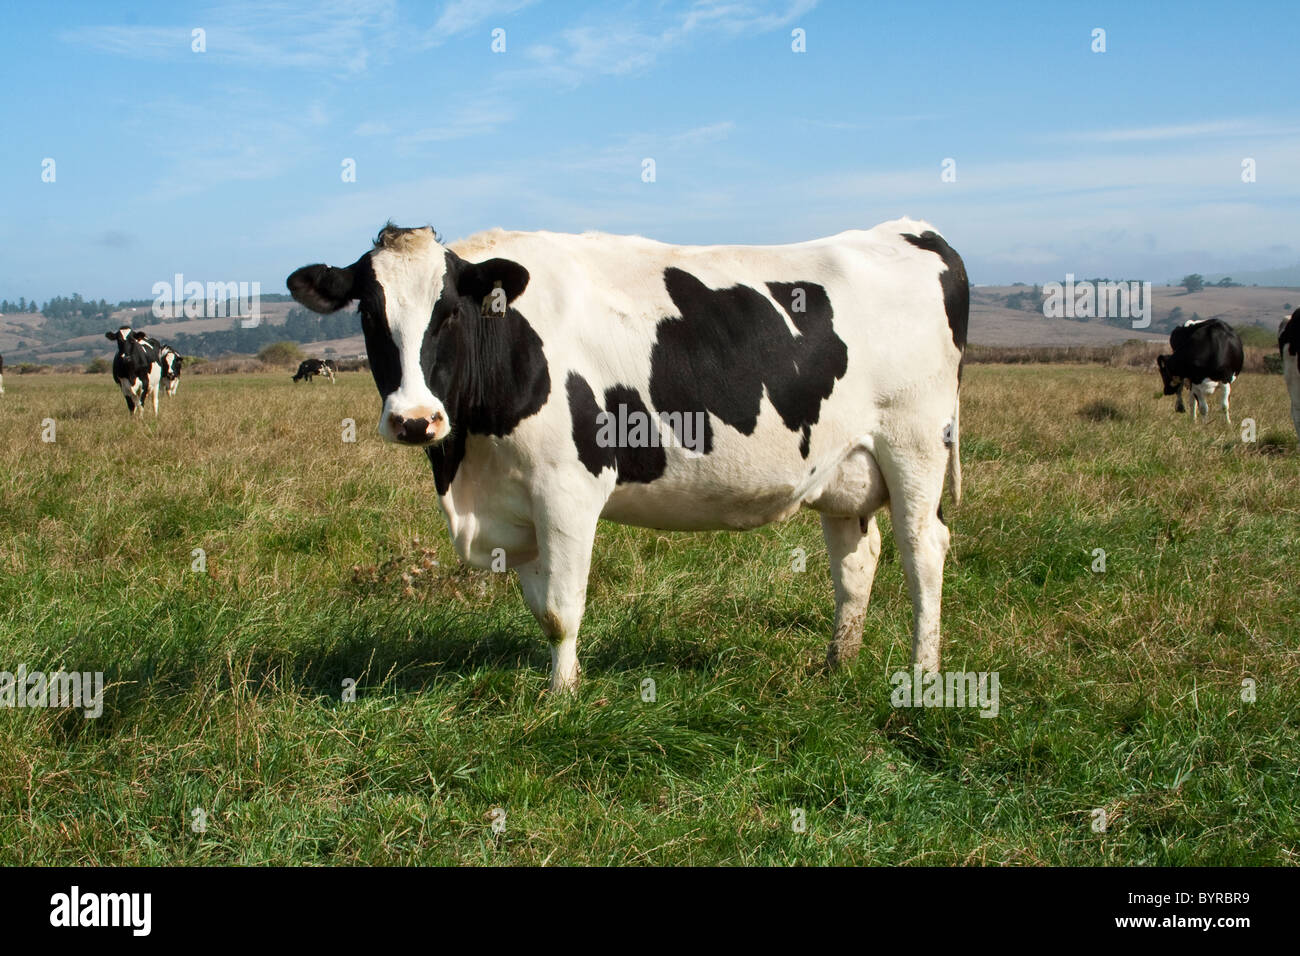 Holstein vacche da latte su un organico di pascolo. Questo allevamento per le vacche di produrre latte biologico / Humboldt County, California, Stati Uniti d'America. Foto Stock